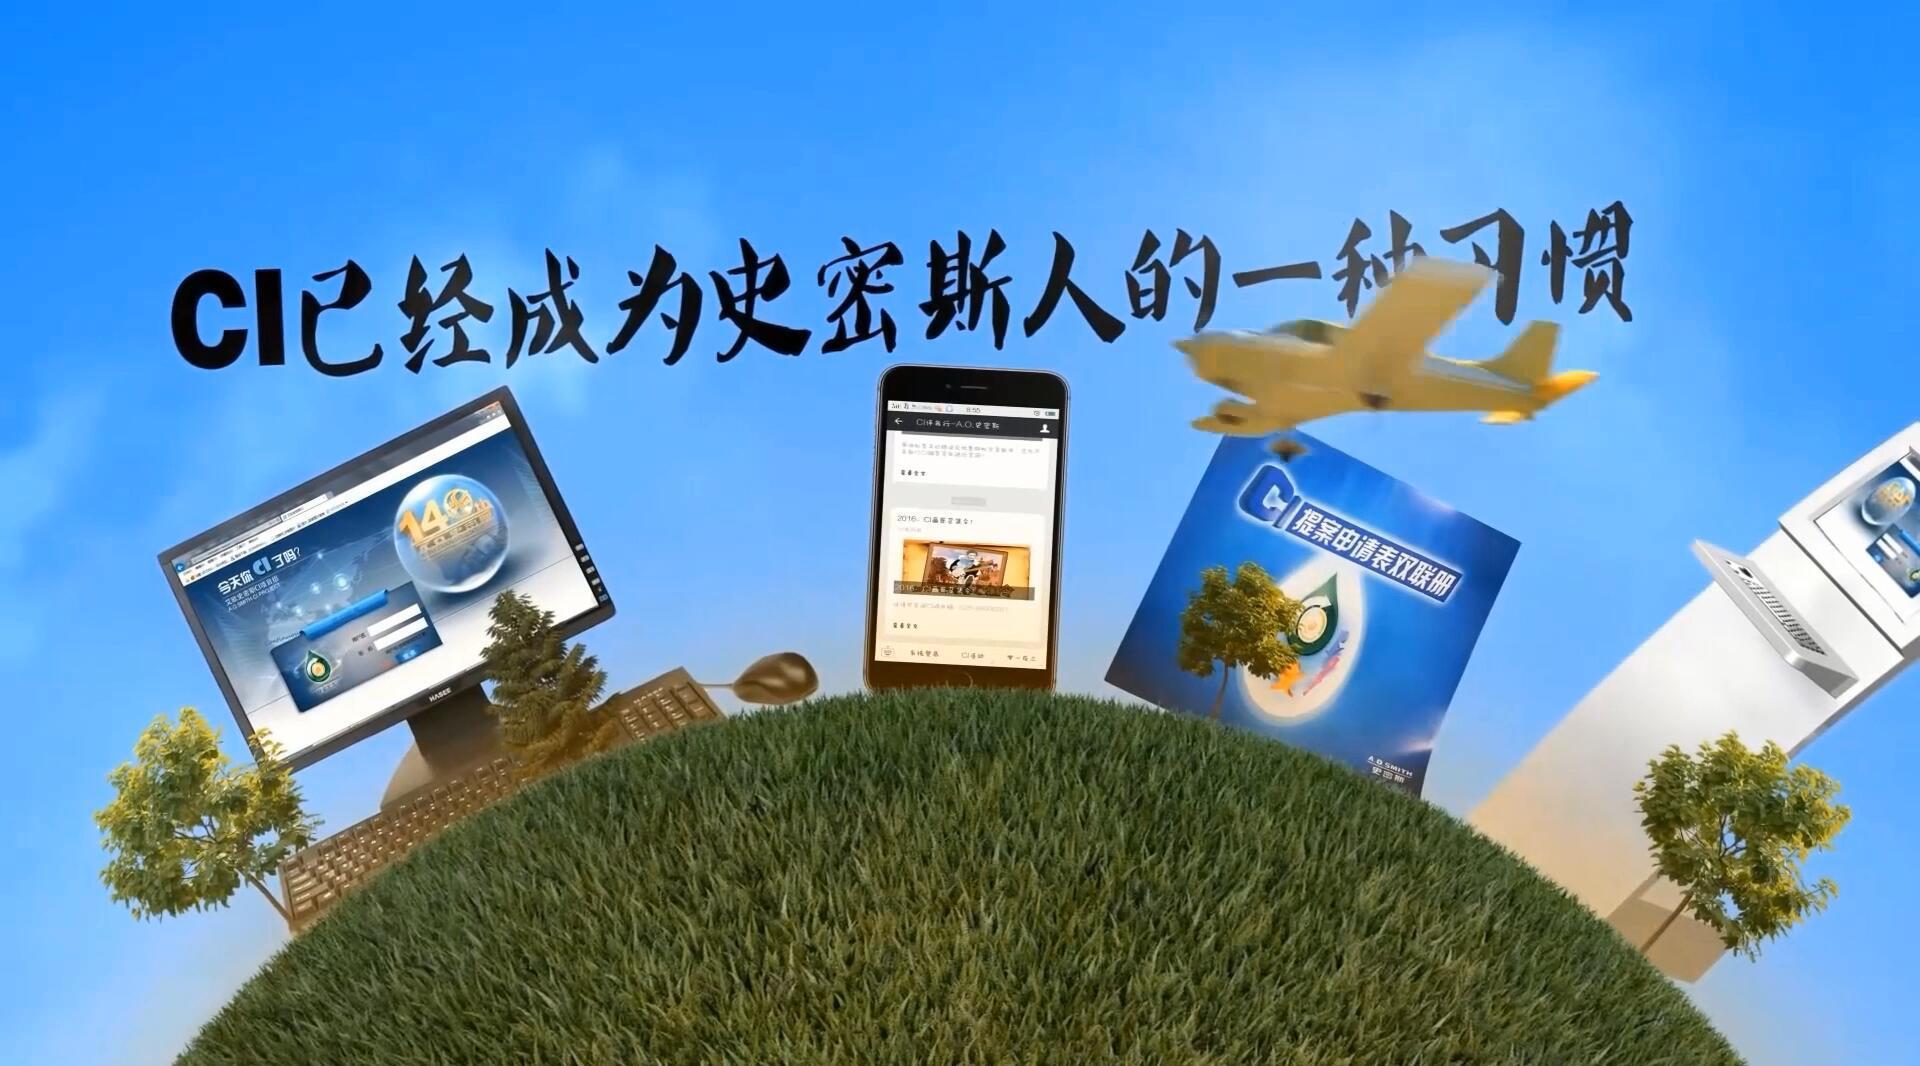 南京A.O.史密斯CI项目组宣传视频